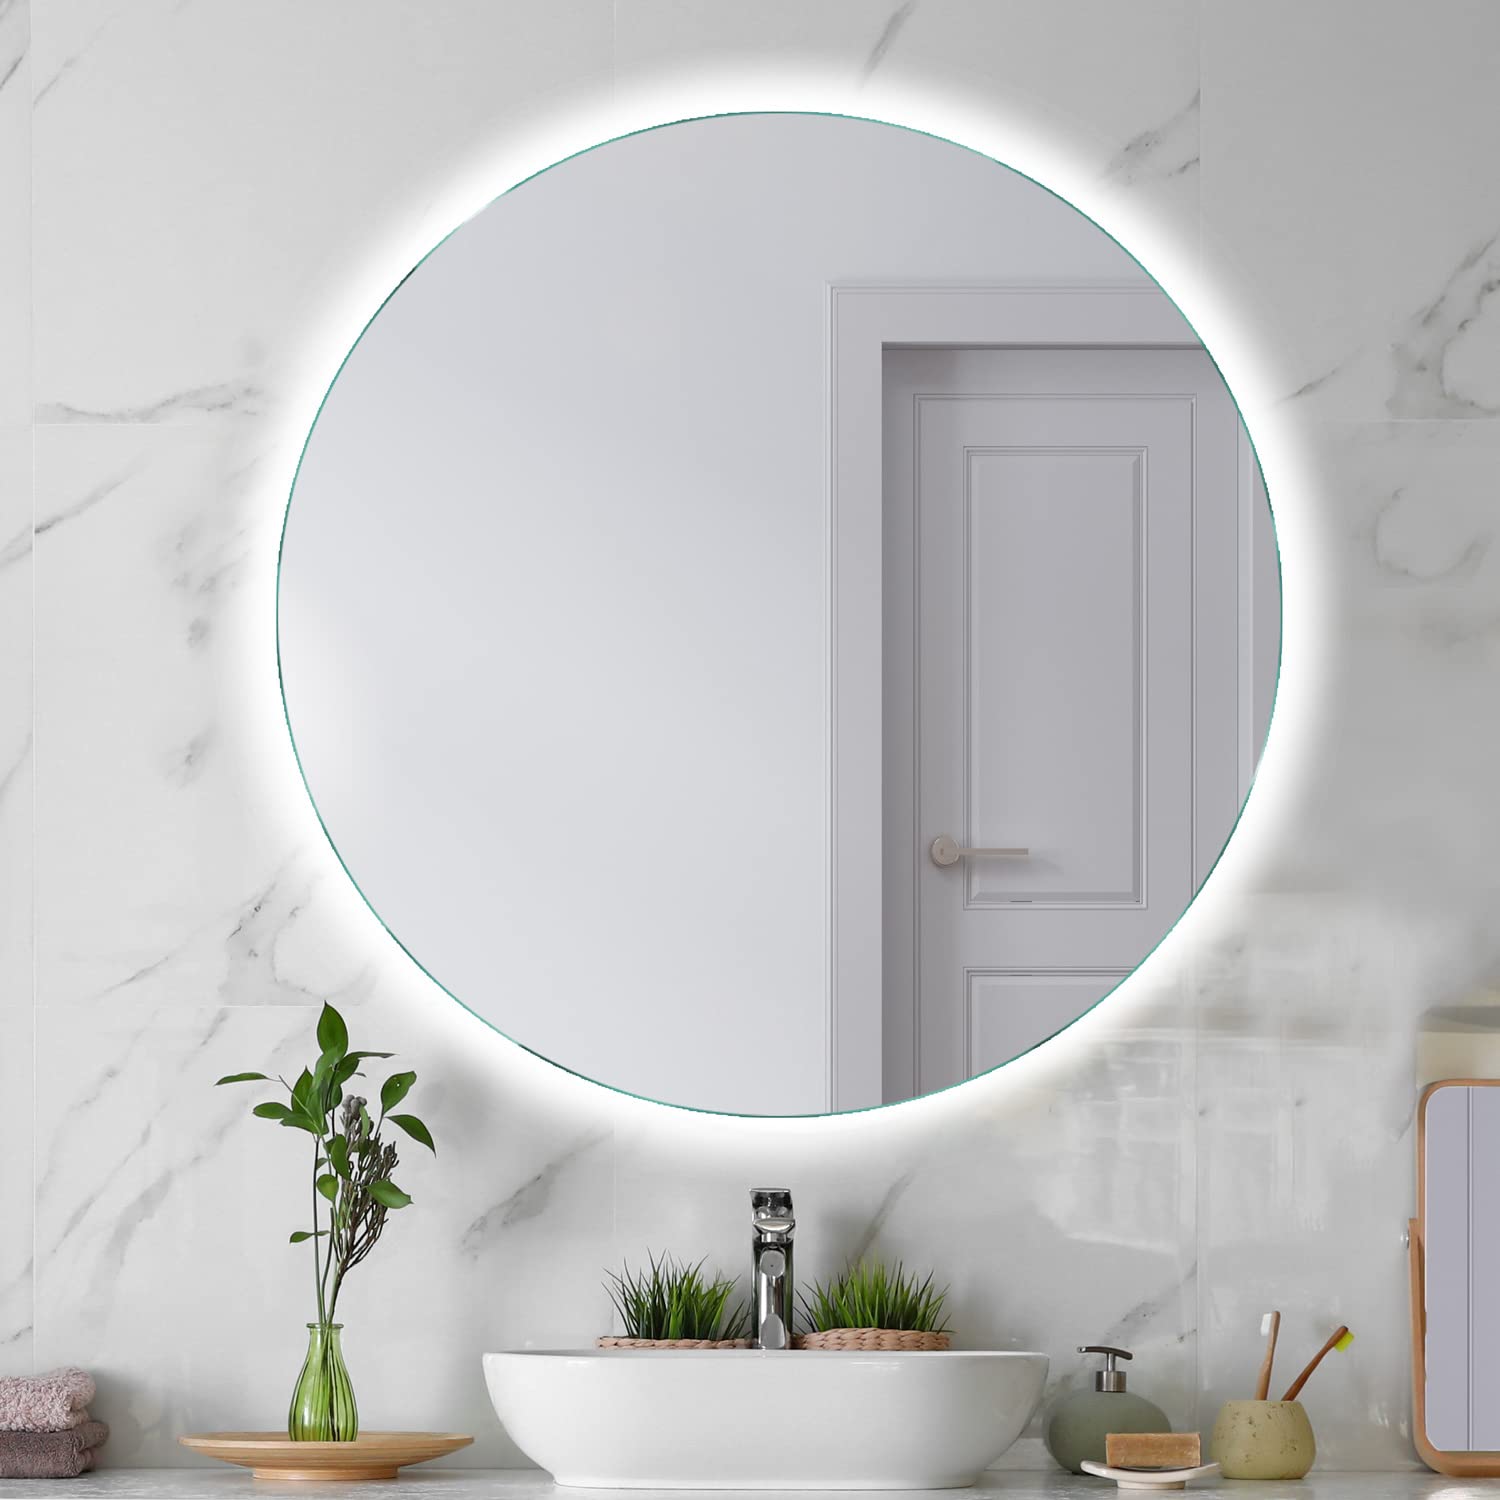 SARAR Runder Badezimmerspiegel mit indirekter rundum LED-Beleuchtung Bad 90cm Made in Germany Designo MAR113 Wandspiegel Badspiegel led